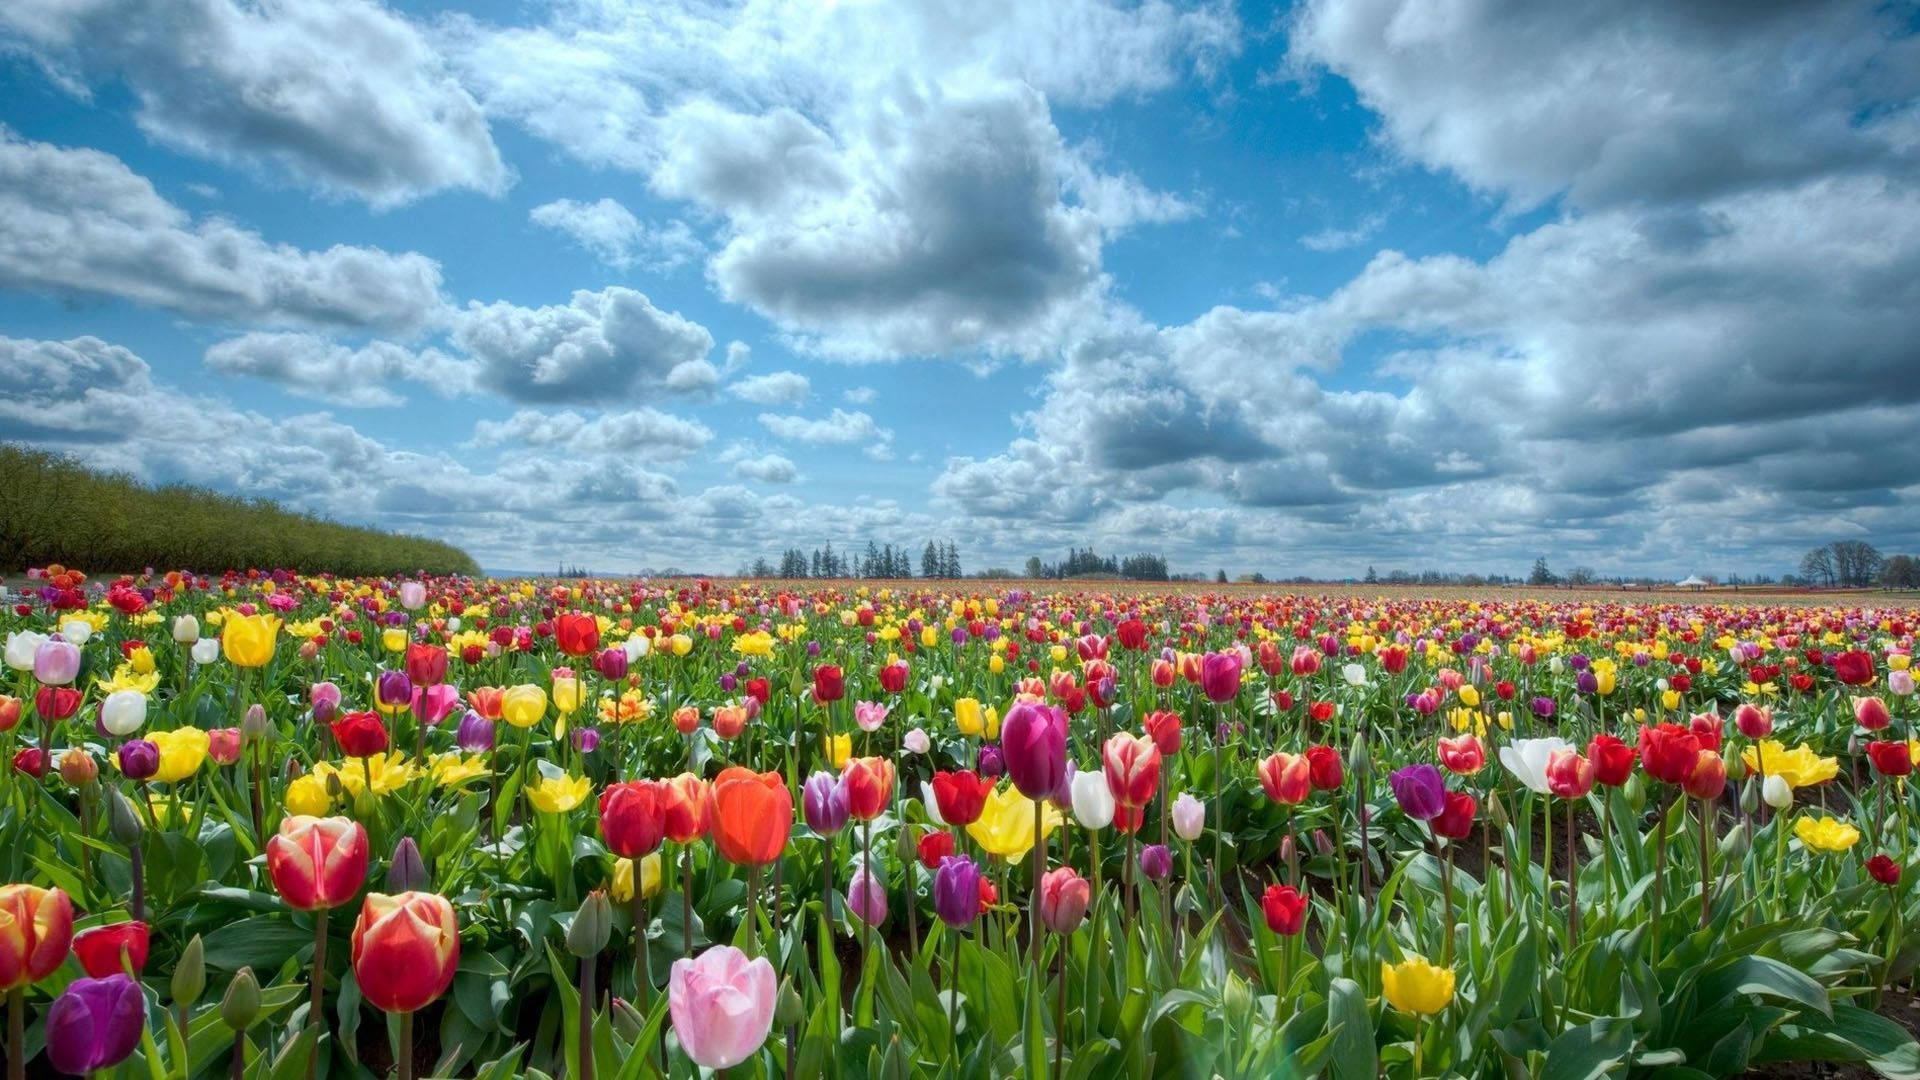 Flower Field Of Tulips